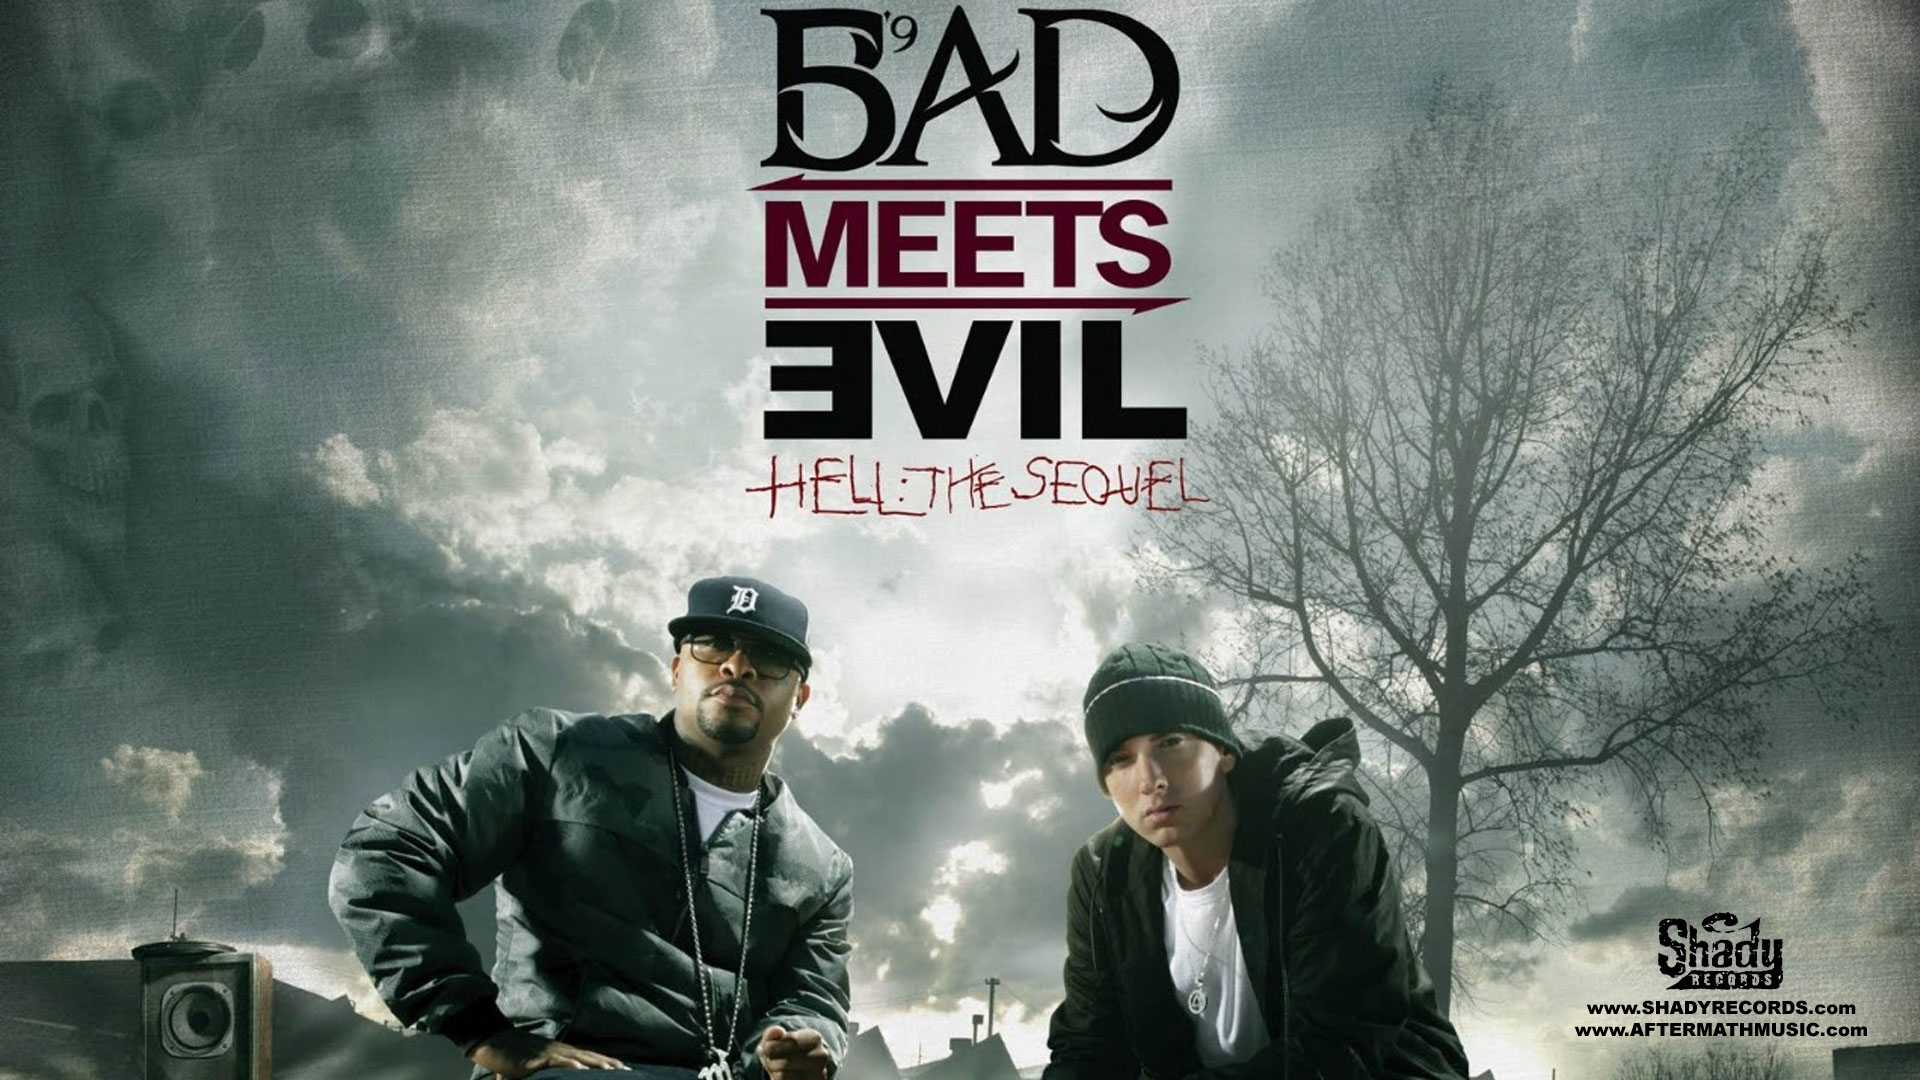 Eminem Wallpapers HD bad meets devil